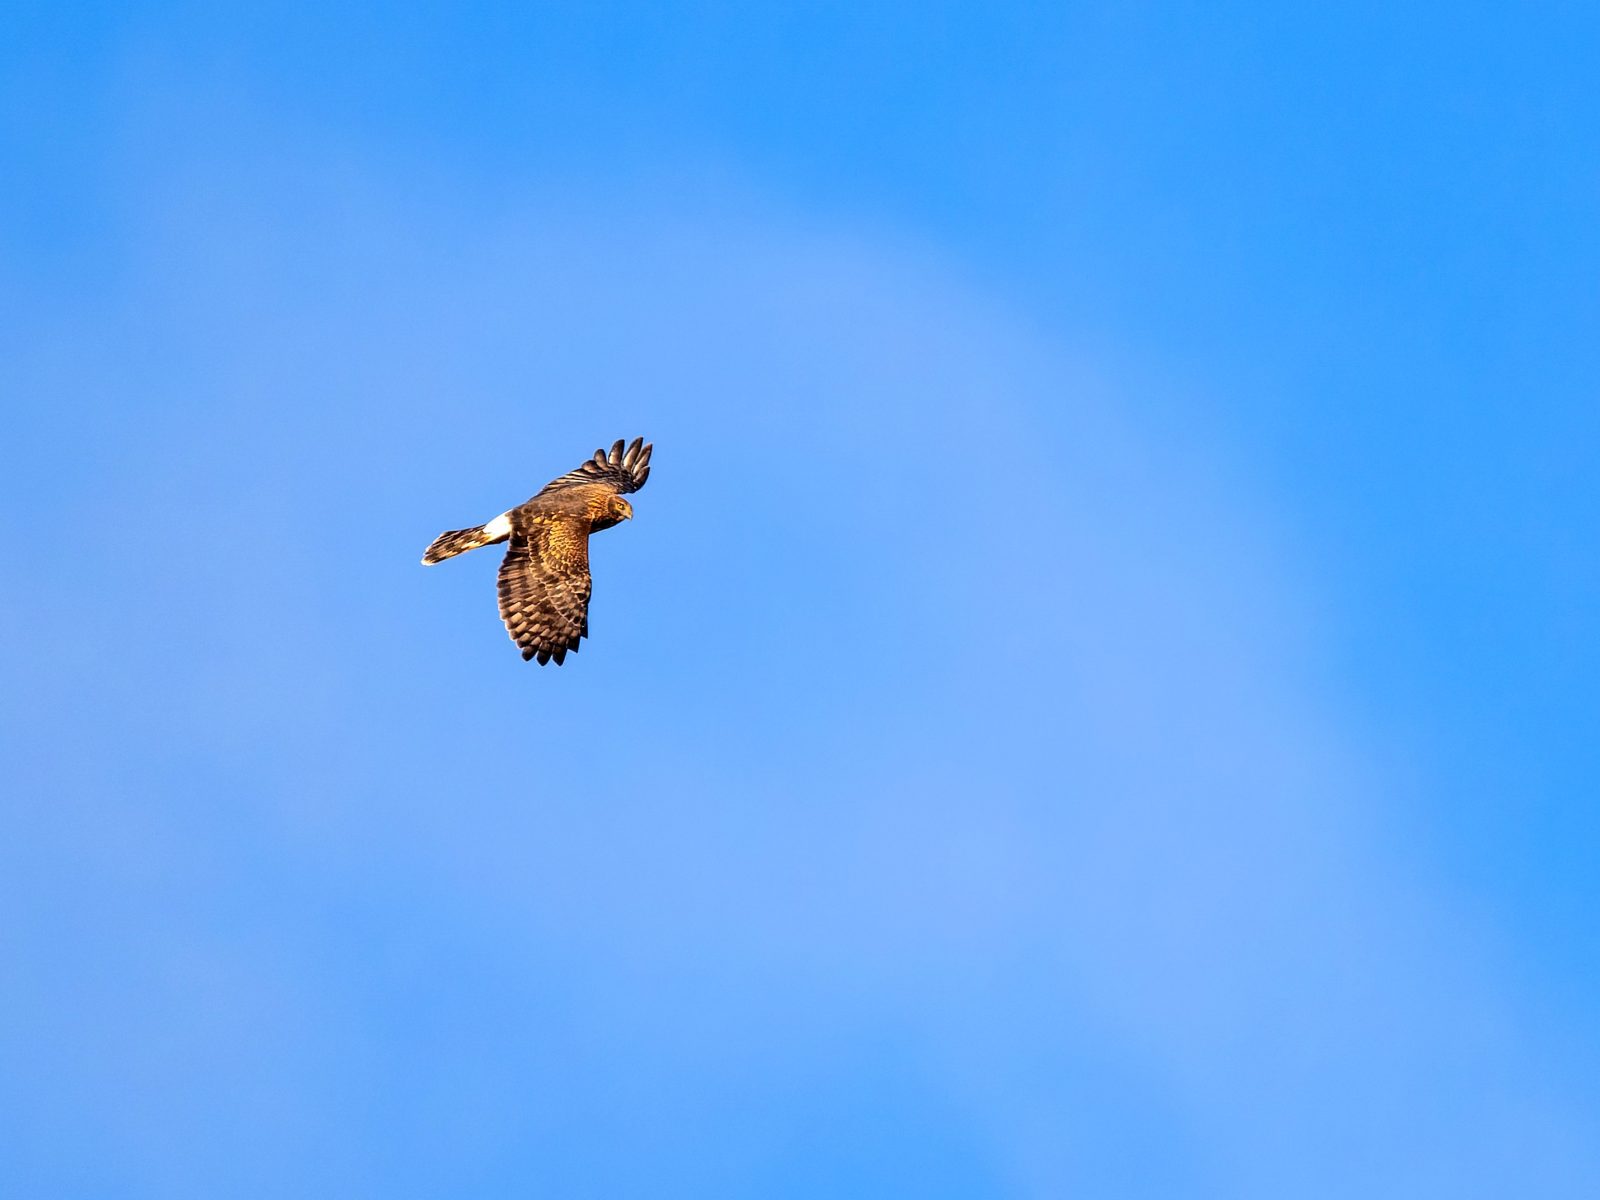 A hawk soaring through a blue sky.